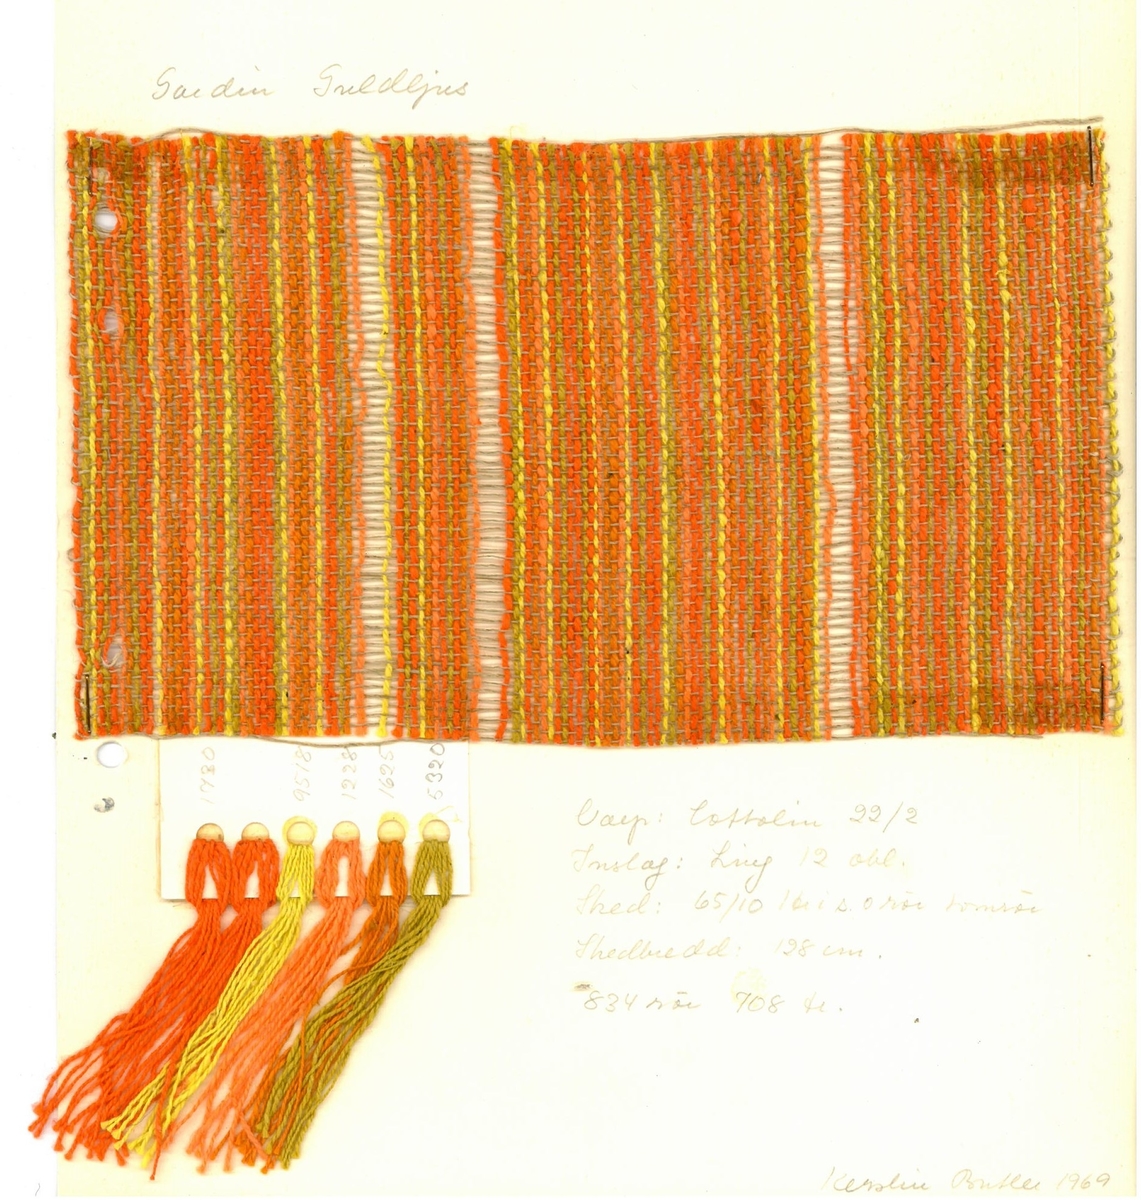 Pärm med vävprover till gardiner.
Gardin "Guldljus"
Formgivare:
Kerstin Butler 1961-1969